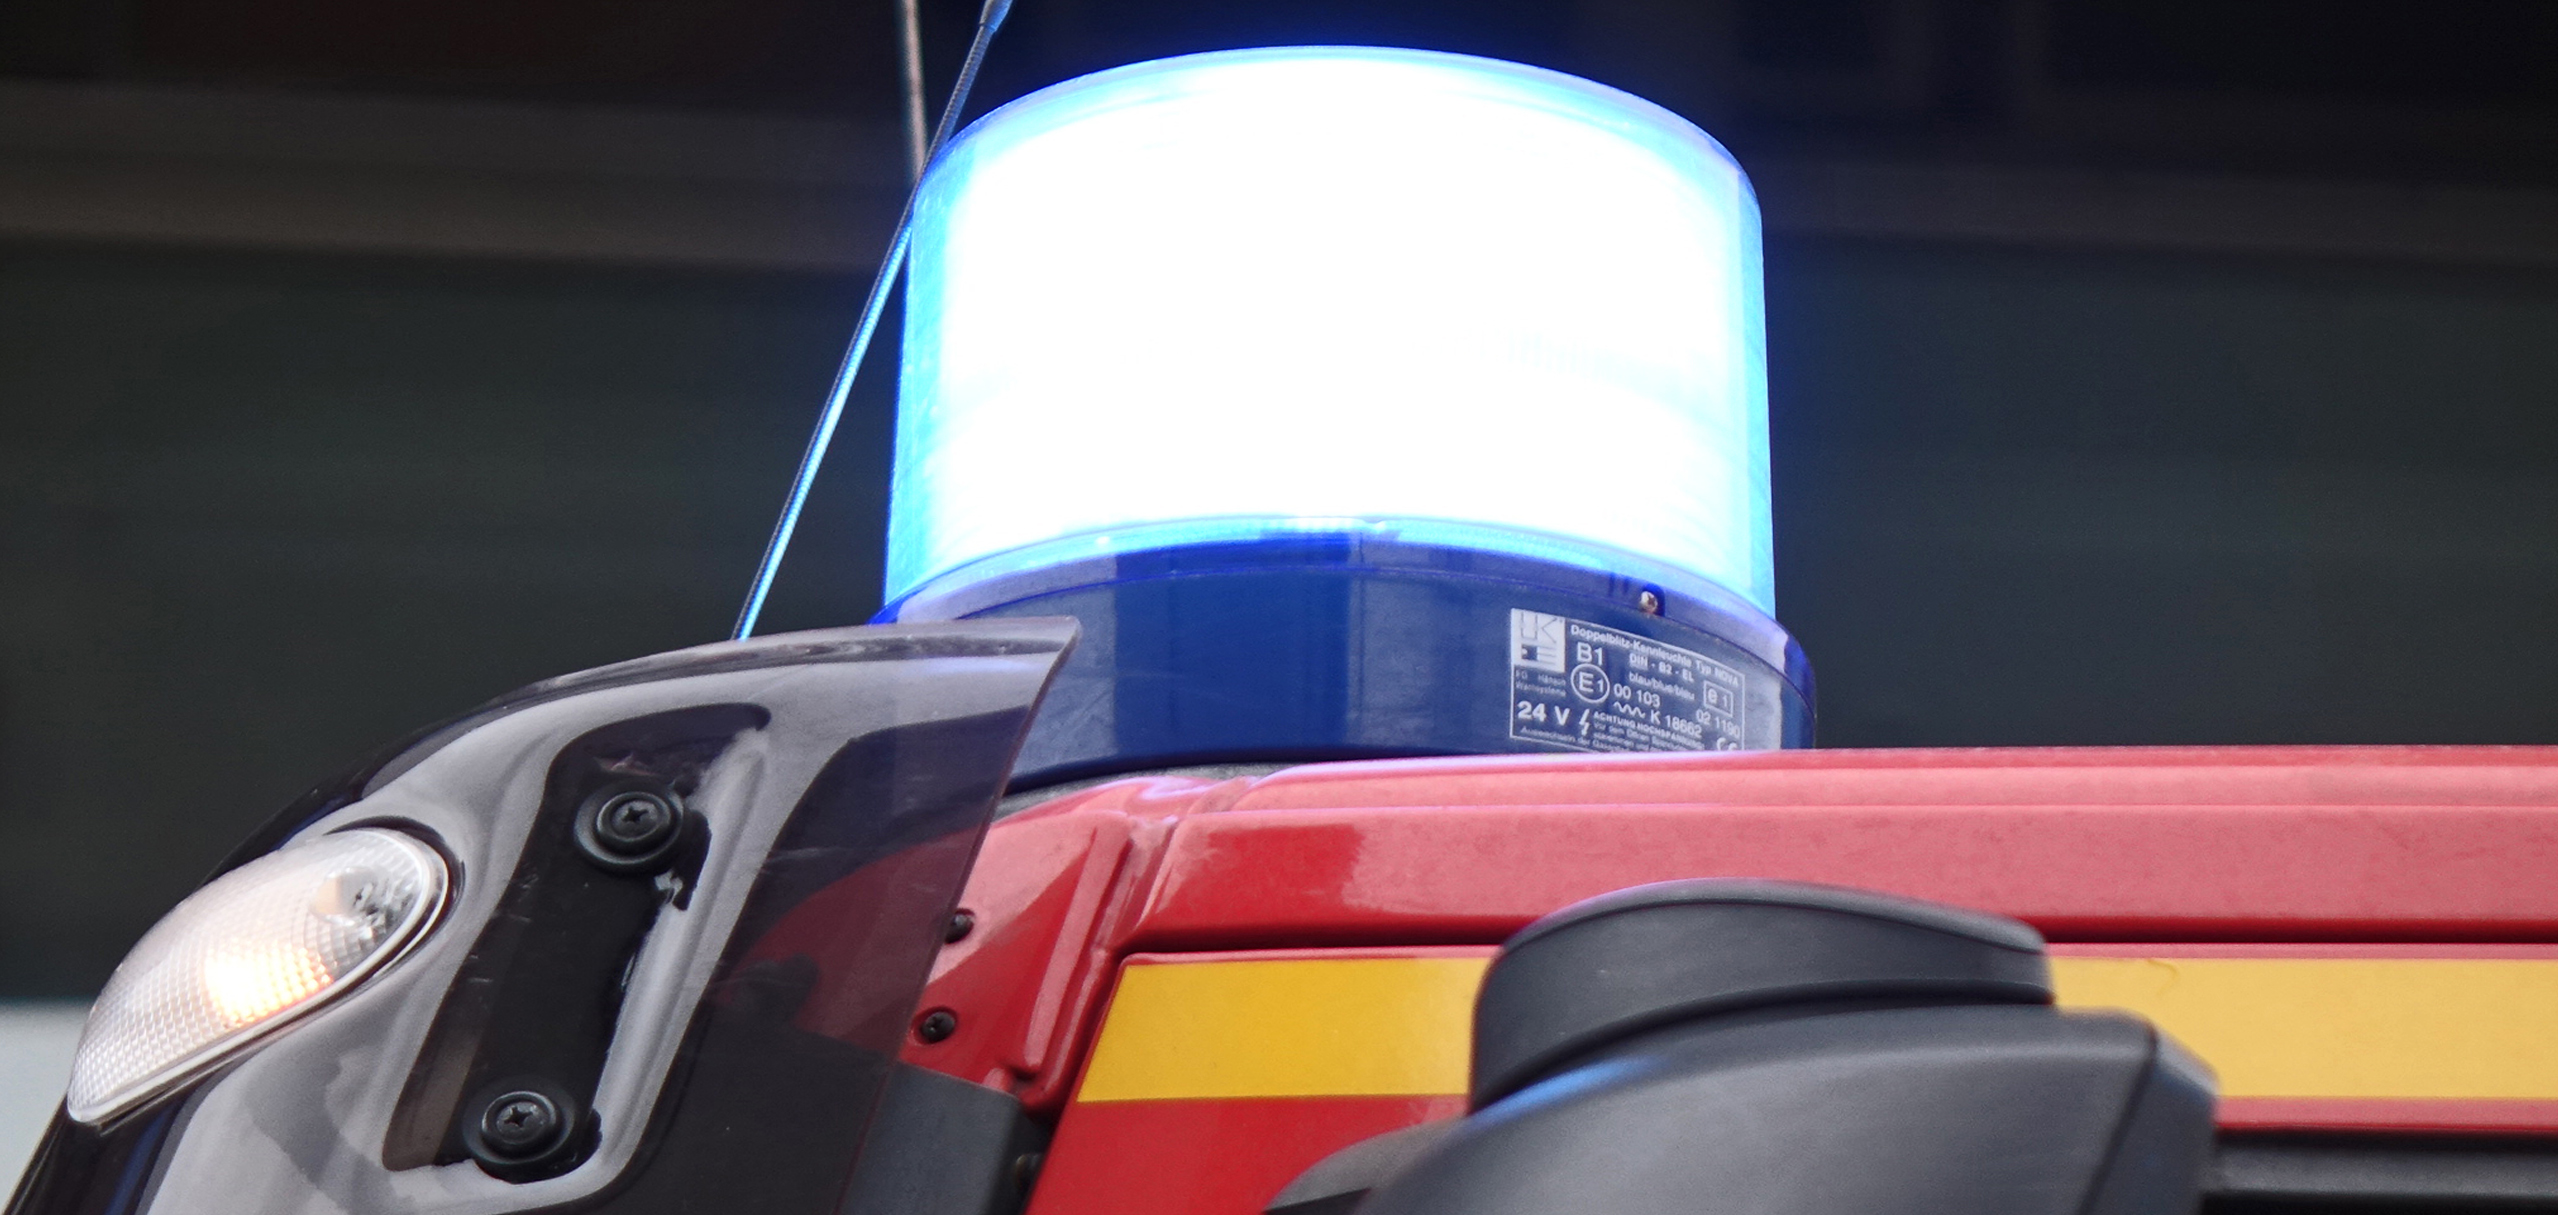 Blaulicht eines Feuerwehrfahrzeugs